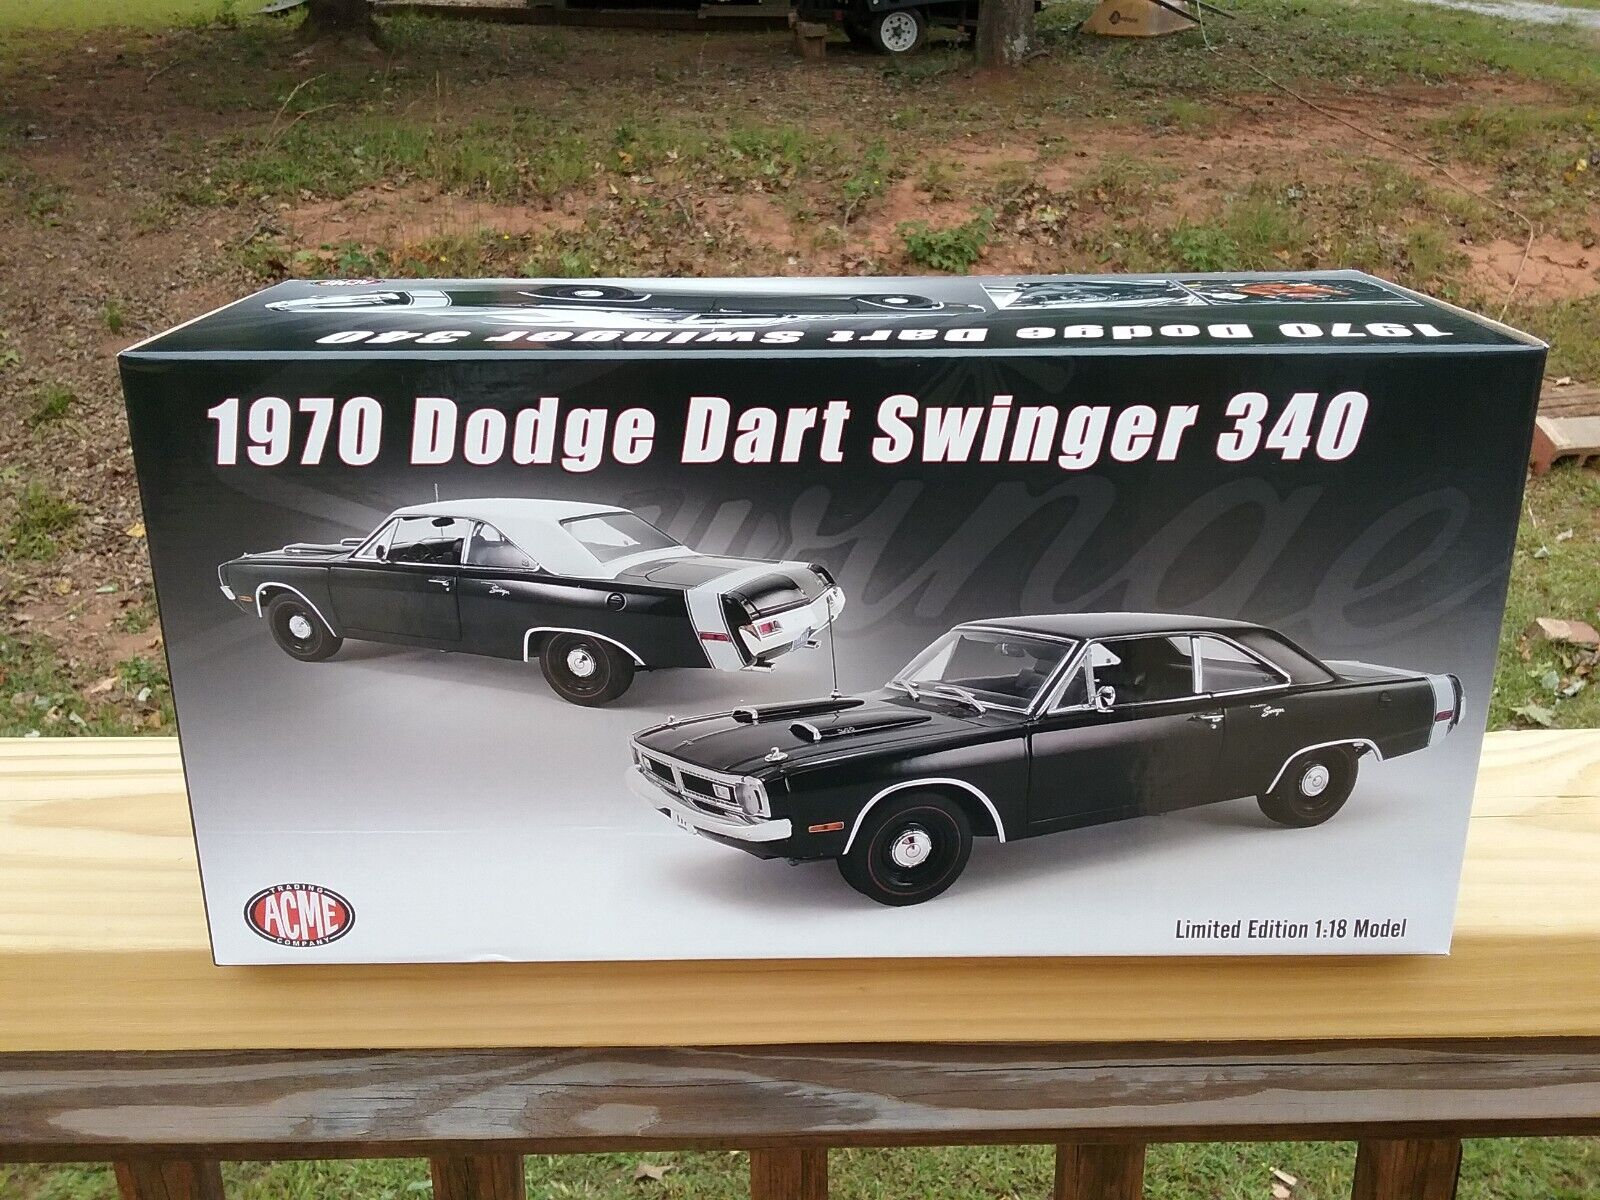 engine for dodge dart swinger